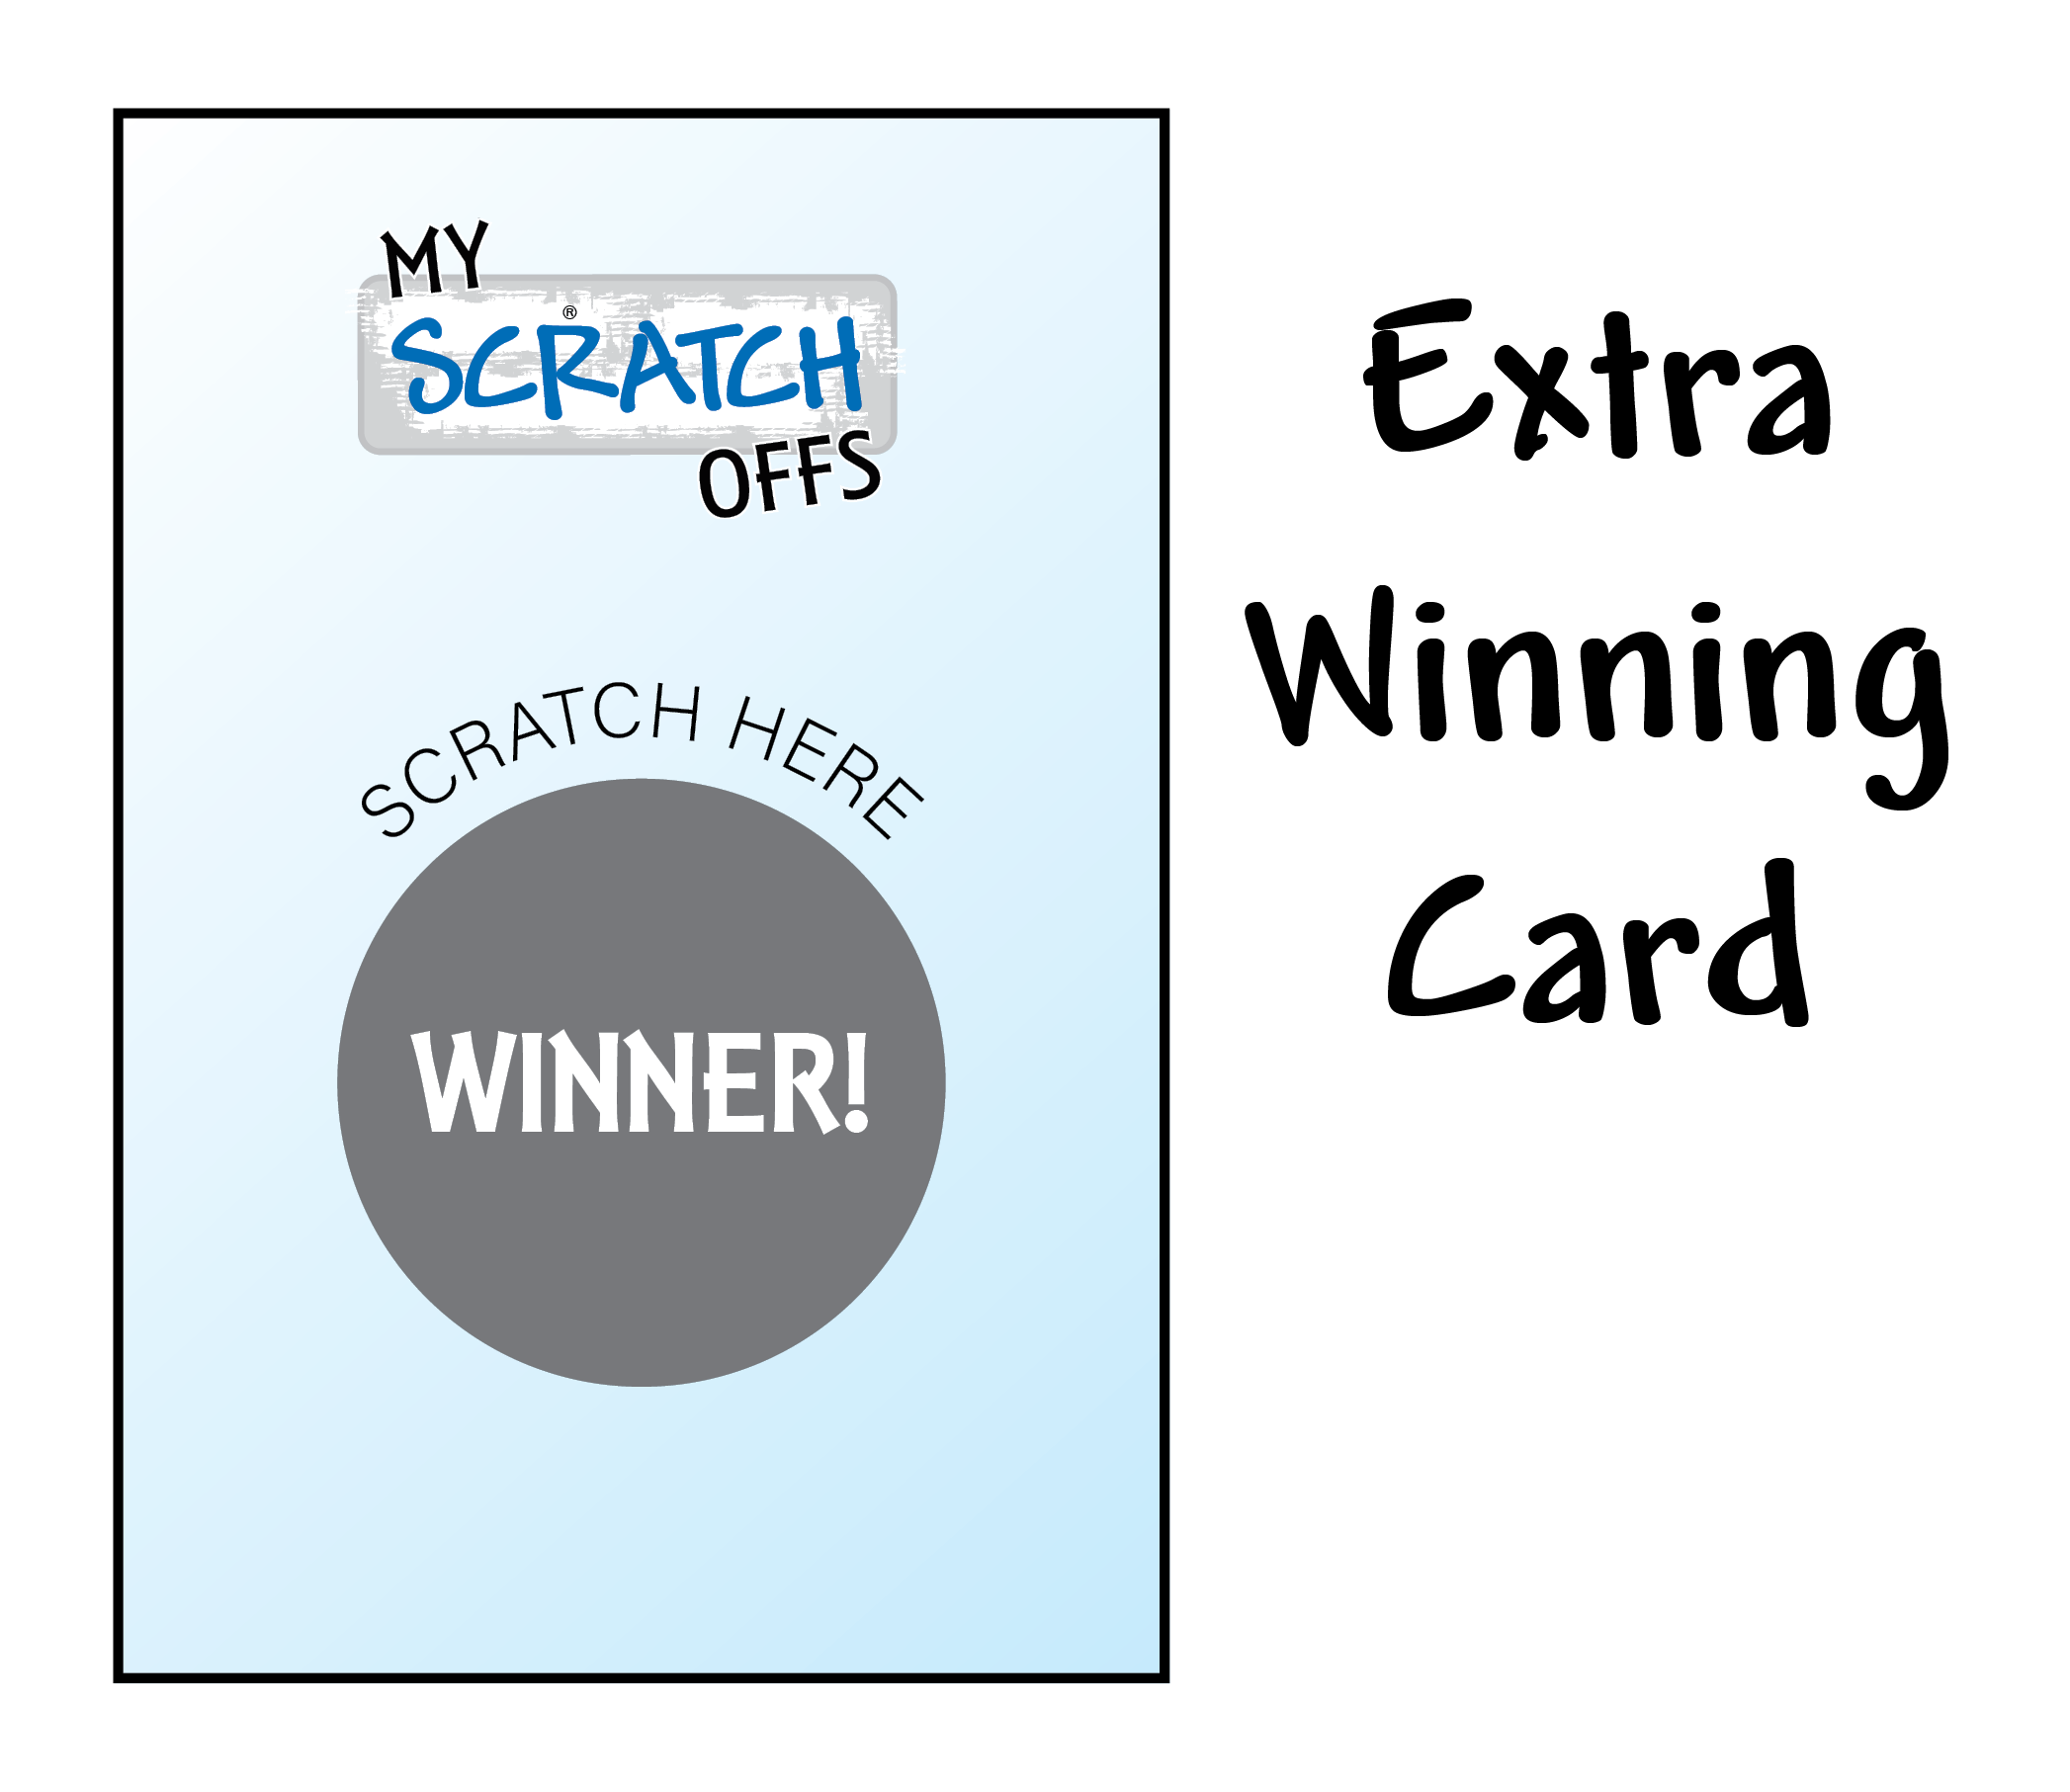 Extra Winning Card - Easter - My Scratch Offs